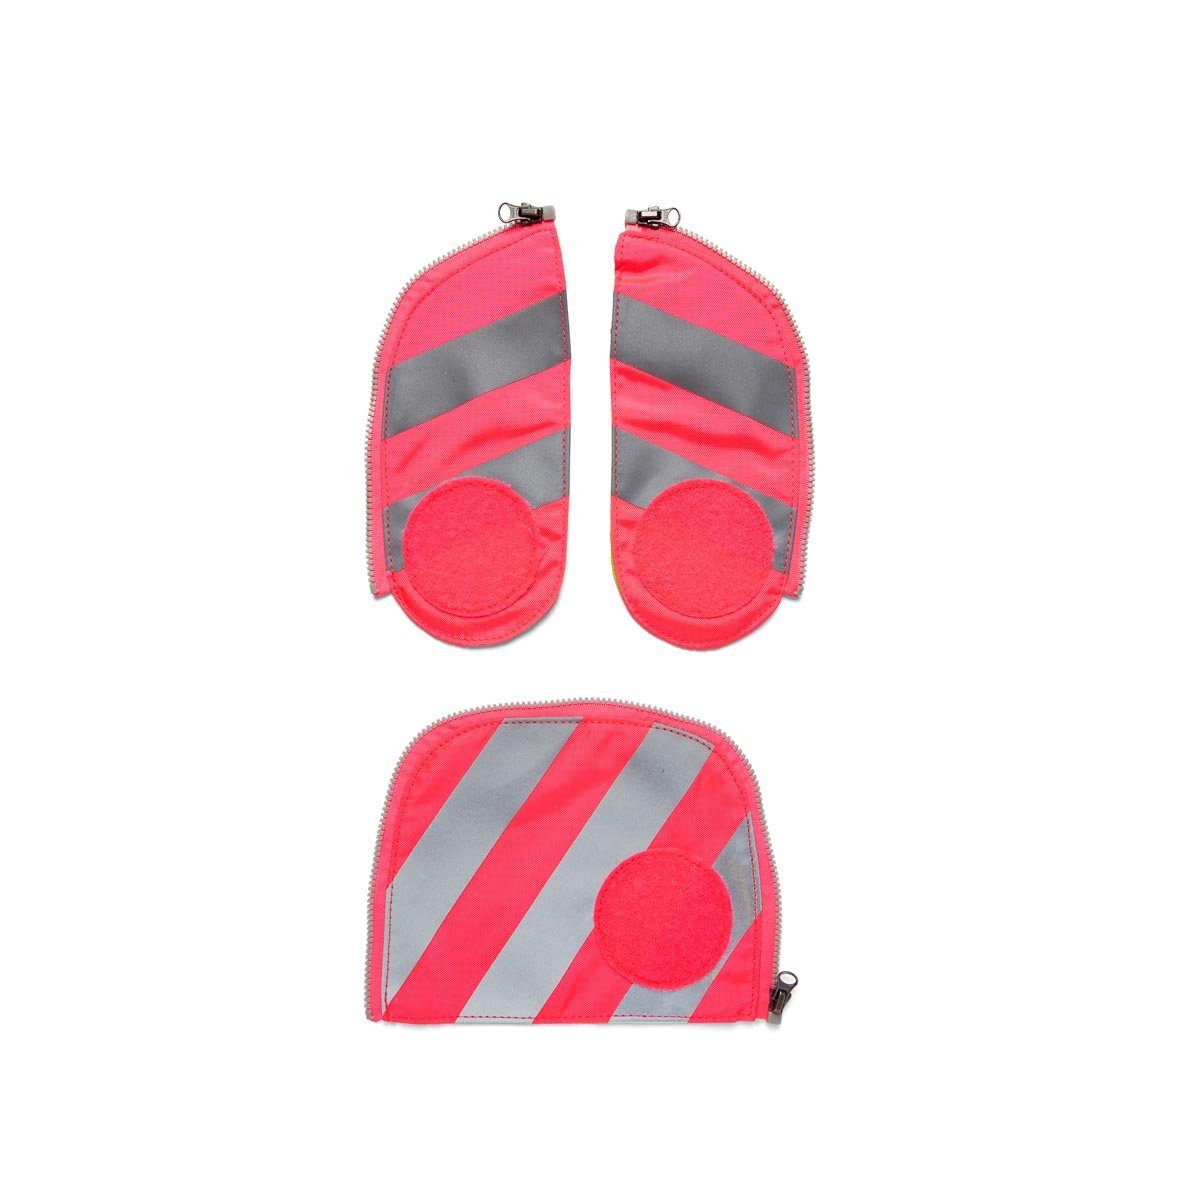 ergobag Schulranzen Fluo Zip-Set Sicherheitsset mit Reflektorstreifen, für alle Schultaschenmodelle ab 2019 001-511 Pink